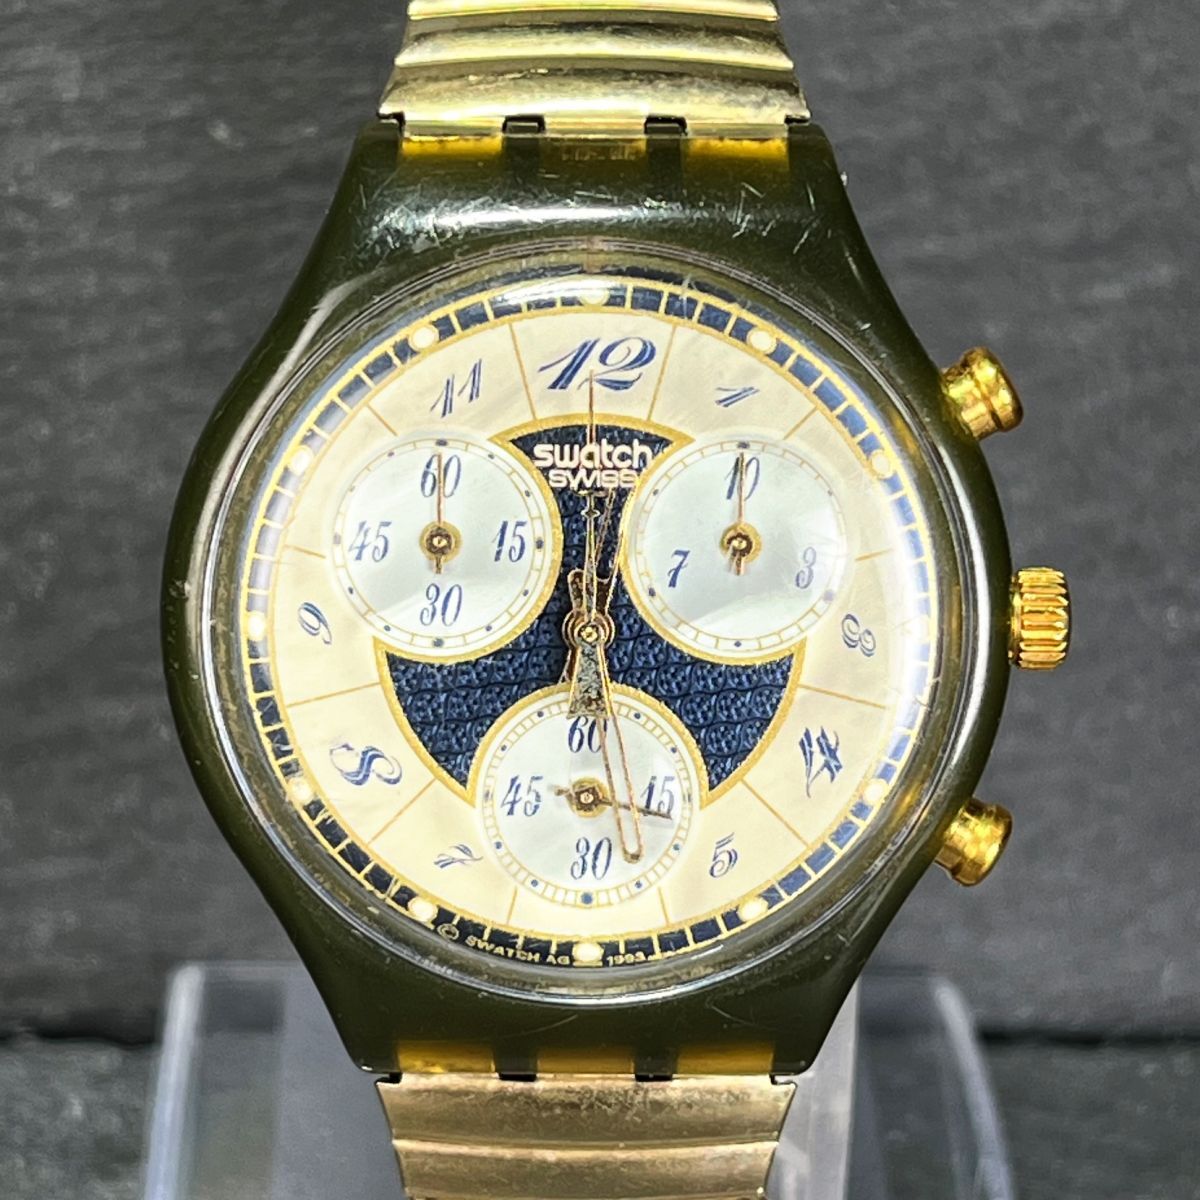 SWATCH Swatch AG1993 SCM104 мужские наручные часы аналог кварц хронограф раунд .. частота нержавеющая сталь новый товар батарейка заменена 